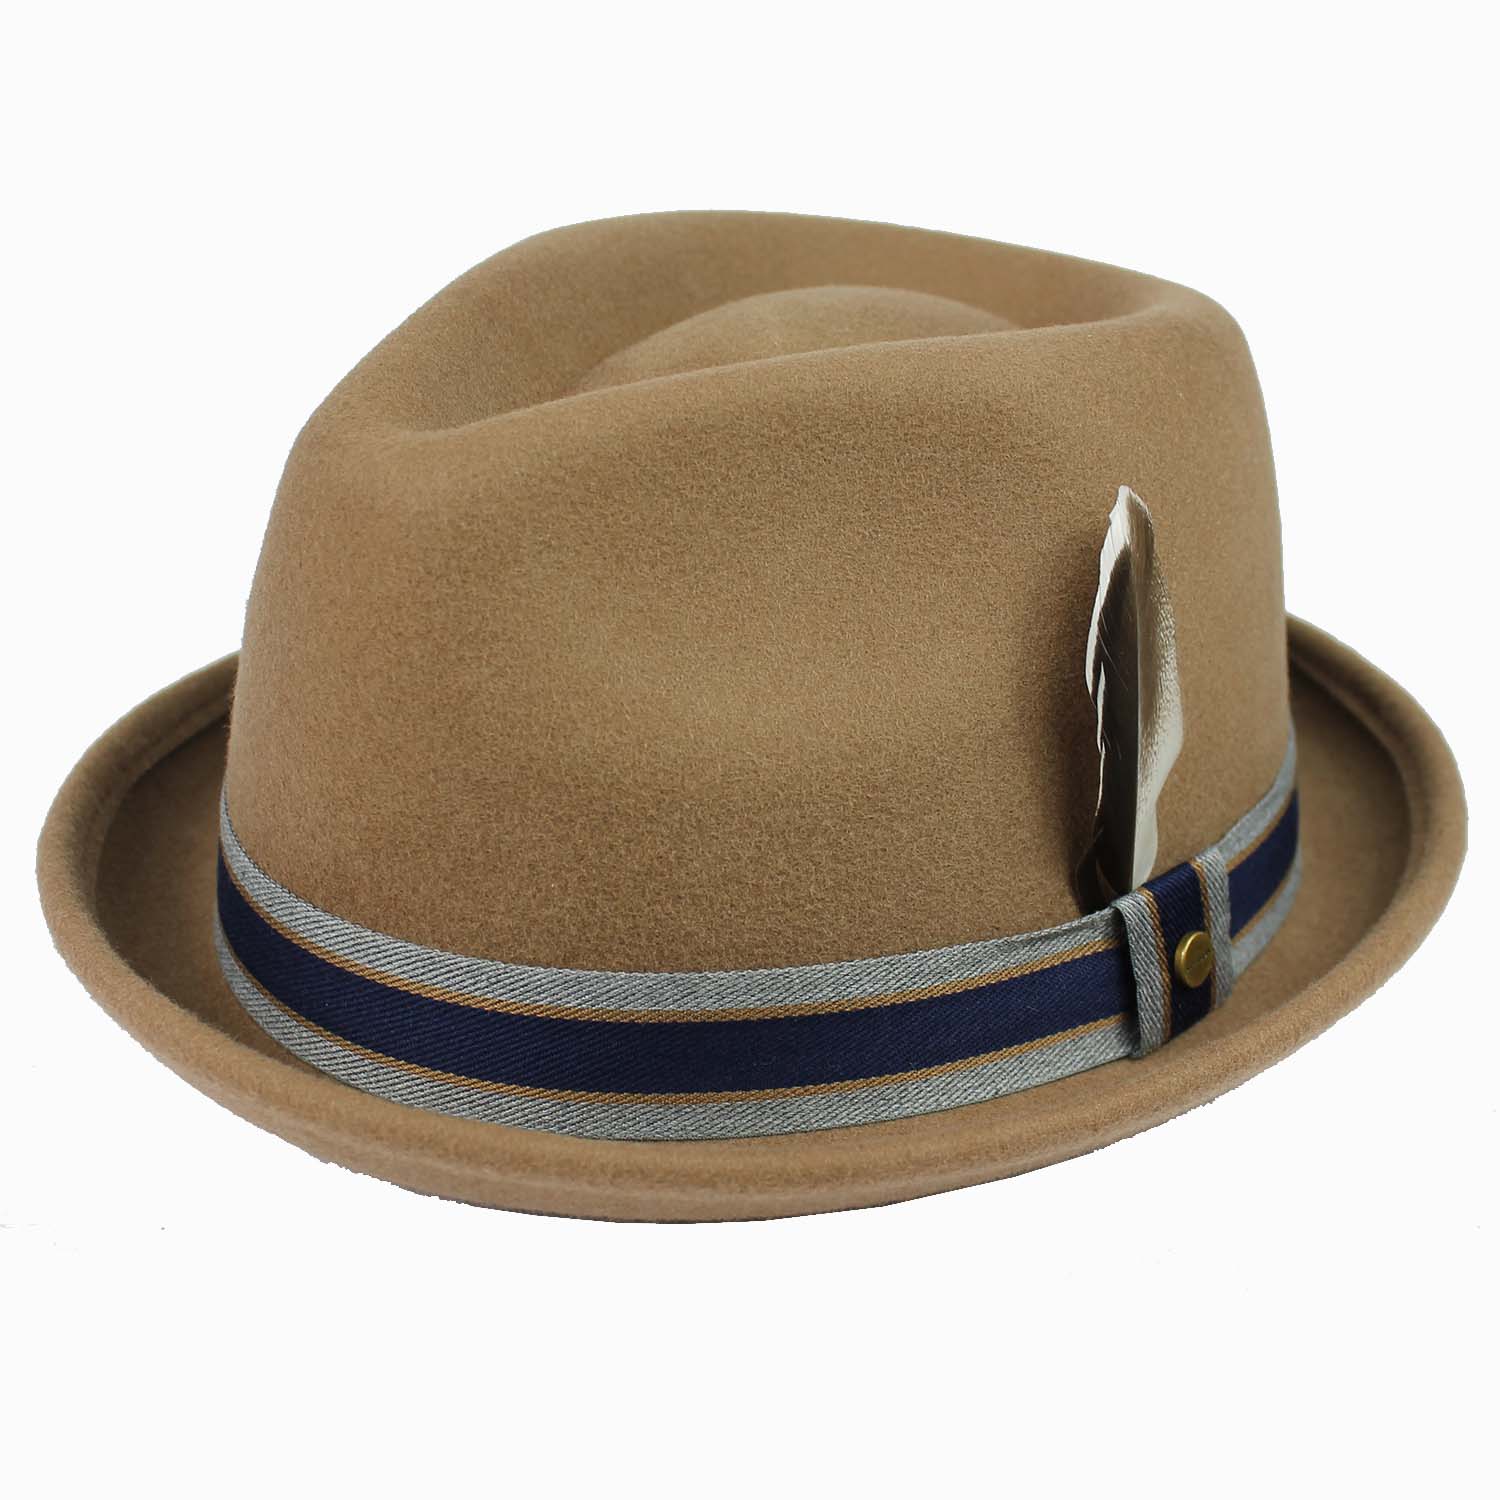 cappello-uomo-marchio-stetson-modello-pork-pie-colore-cammello